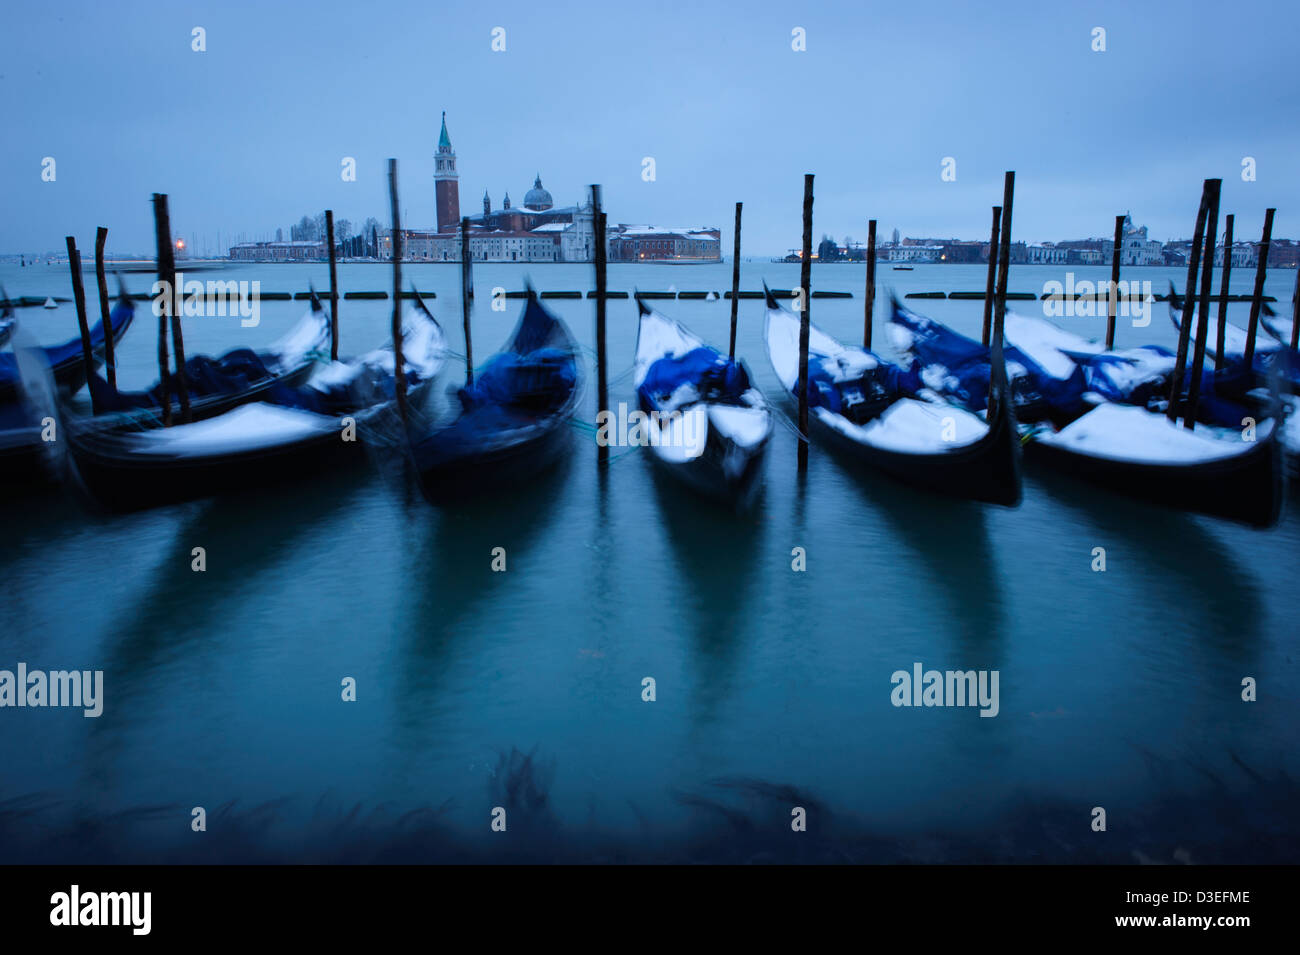 Gondoles couvertes de neige vu à Venise, au bord de l'eau au cours de la forte chute de neige et des conditions météorologiques à Venise. Banque D'Images